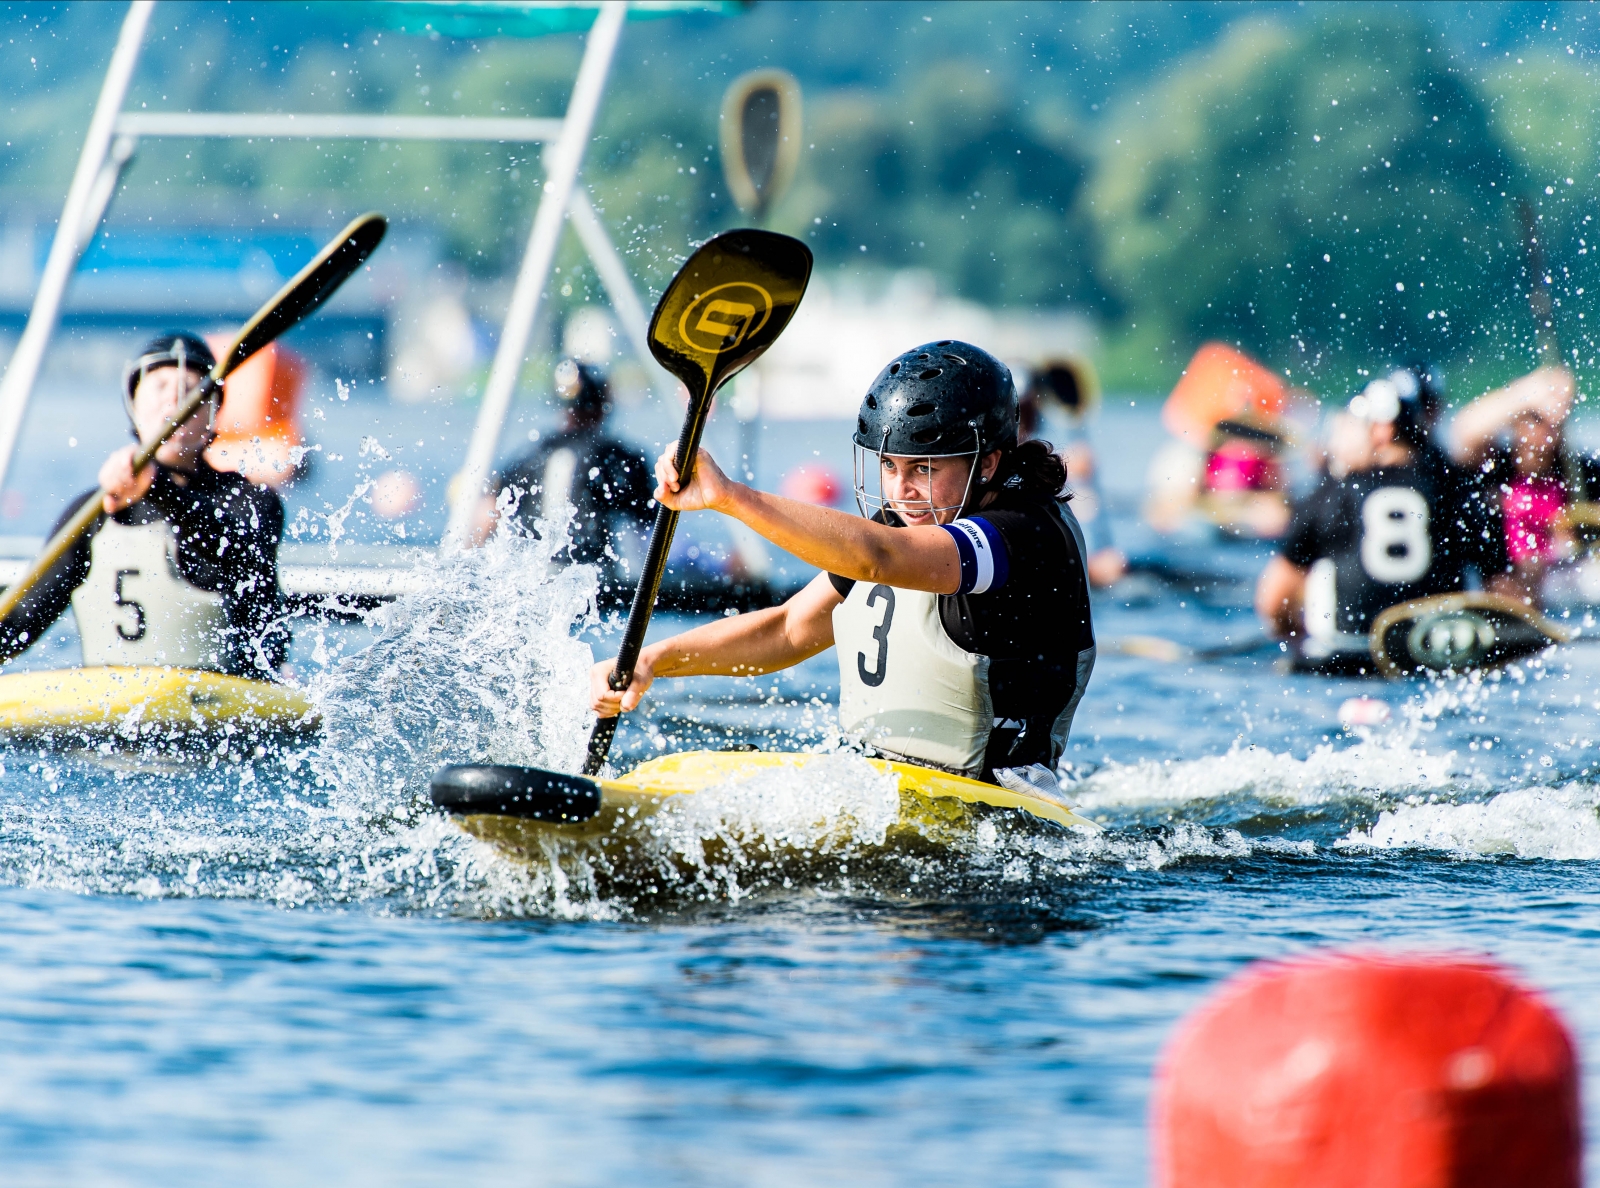 Frauen beim Kanupolo. Eine Frau mit einem schwazren Helm und schwarz-weißen Trikot mit der Nummer 3 prescht paddelnd mit ihrem gelb-schwarzen Kanu vorwärts, das Wasser spritzt nach allen Seiten.